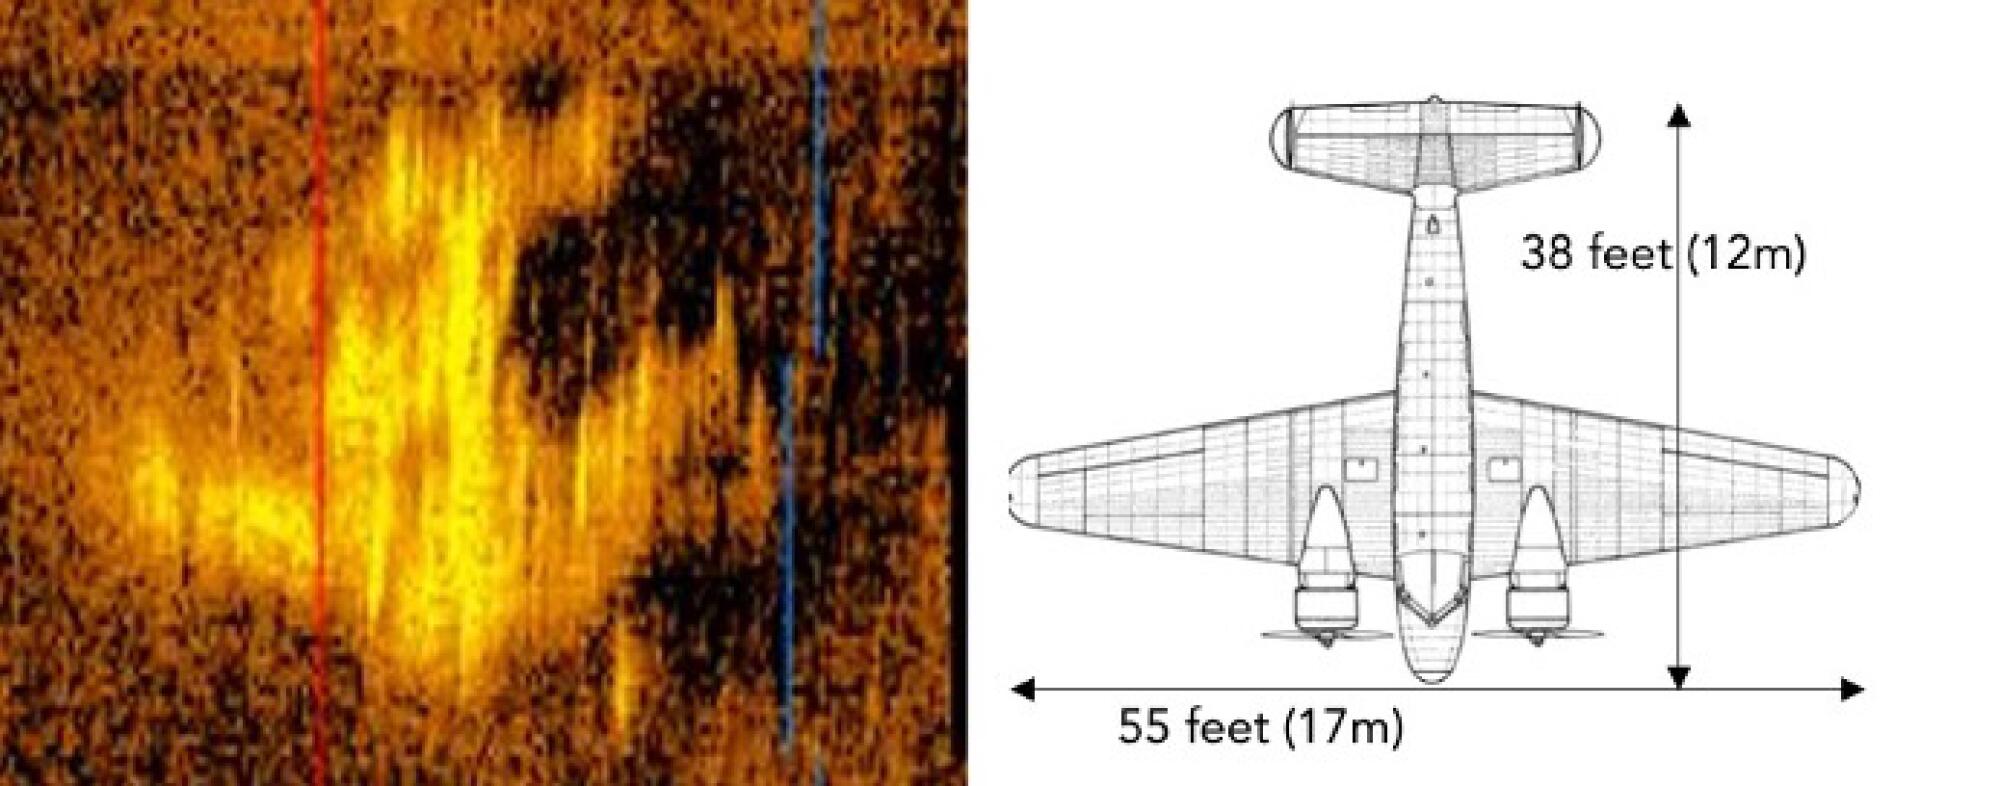 可能是艾米莉亚·埃尔哈特的飞机的图像。 